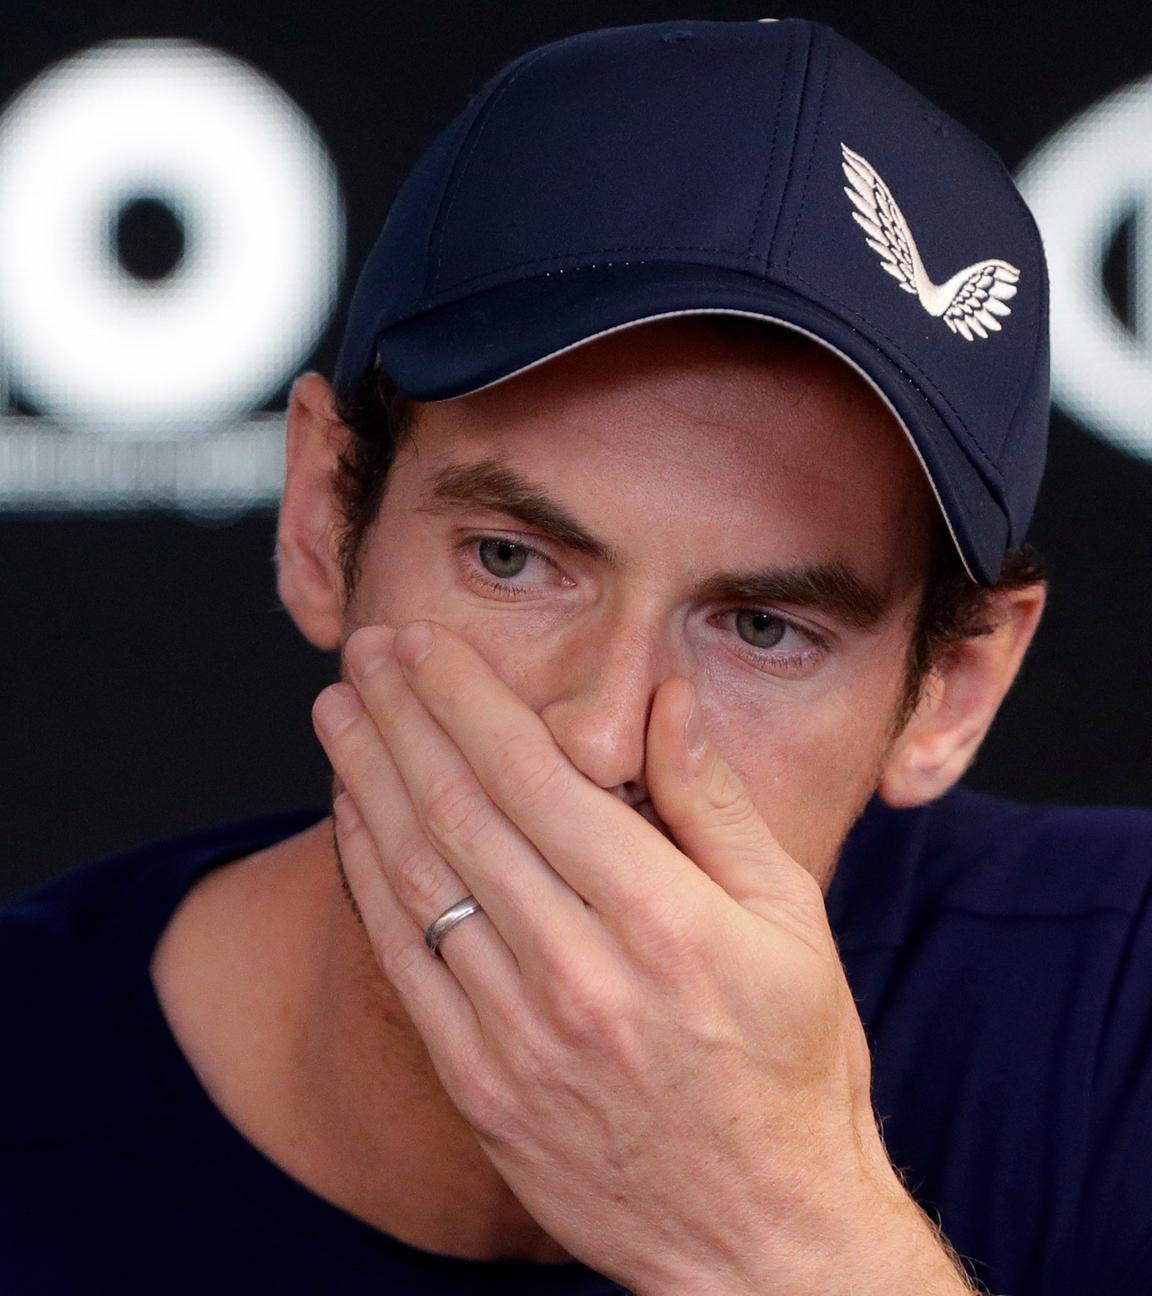 Andy Murray weinend bei Pressekonferenz, Melbourne, 11.01.19